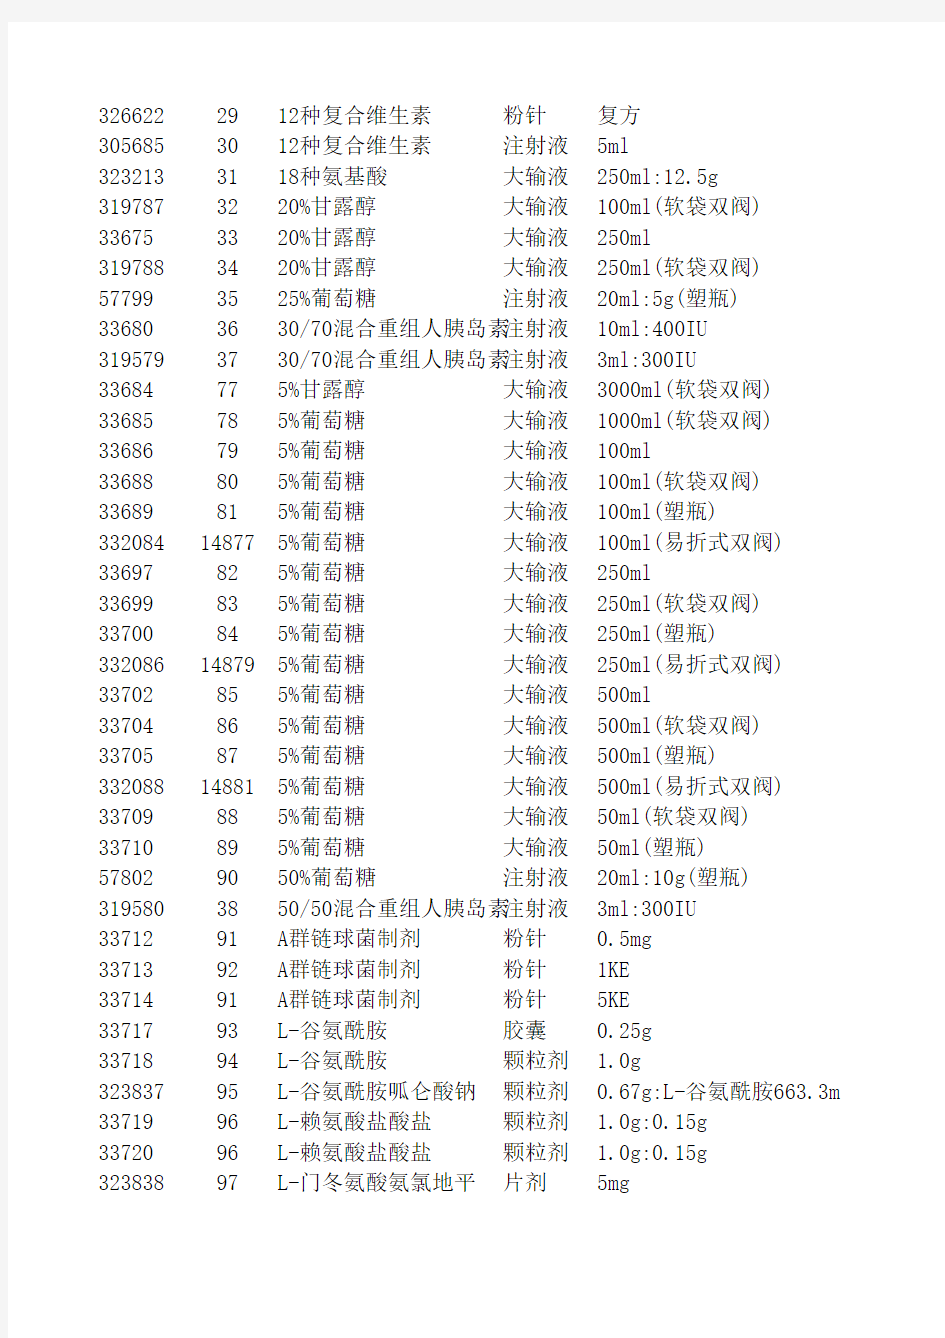 2010年河南省药品集中采购目录竞价分组